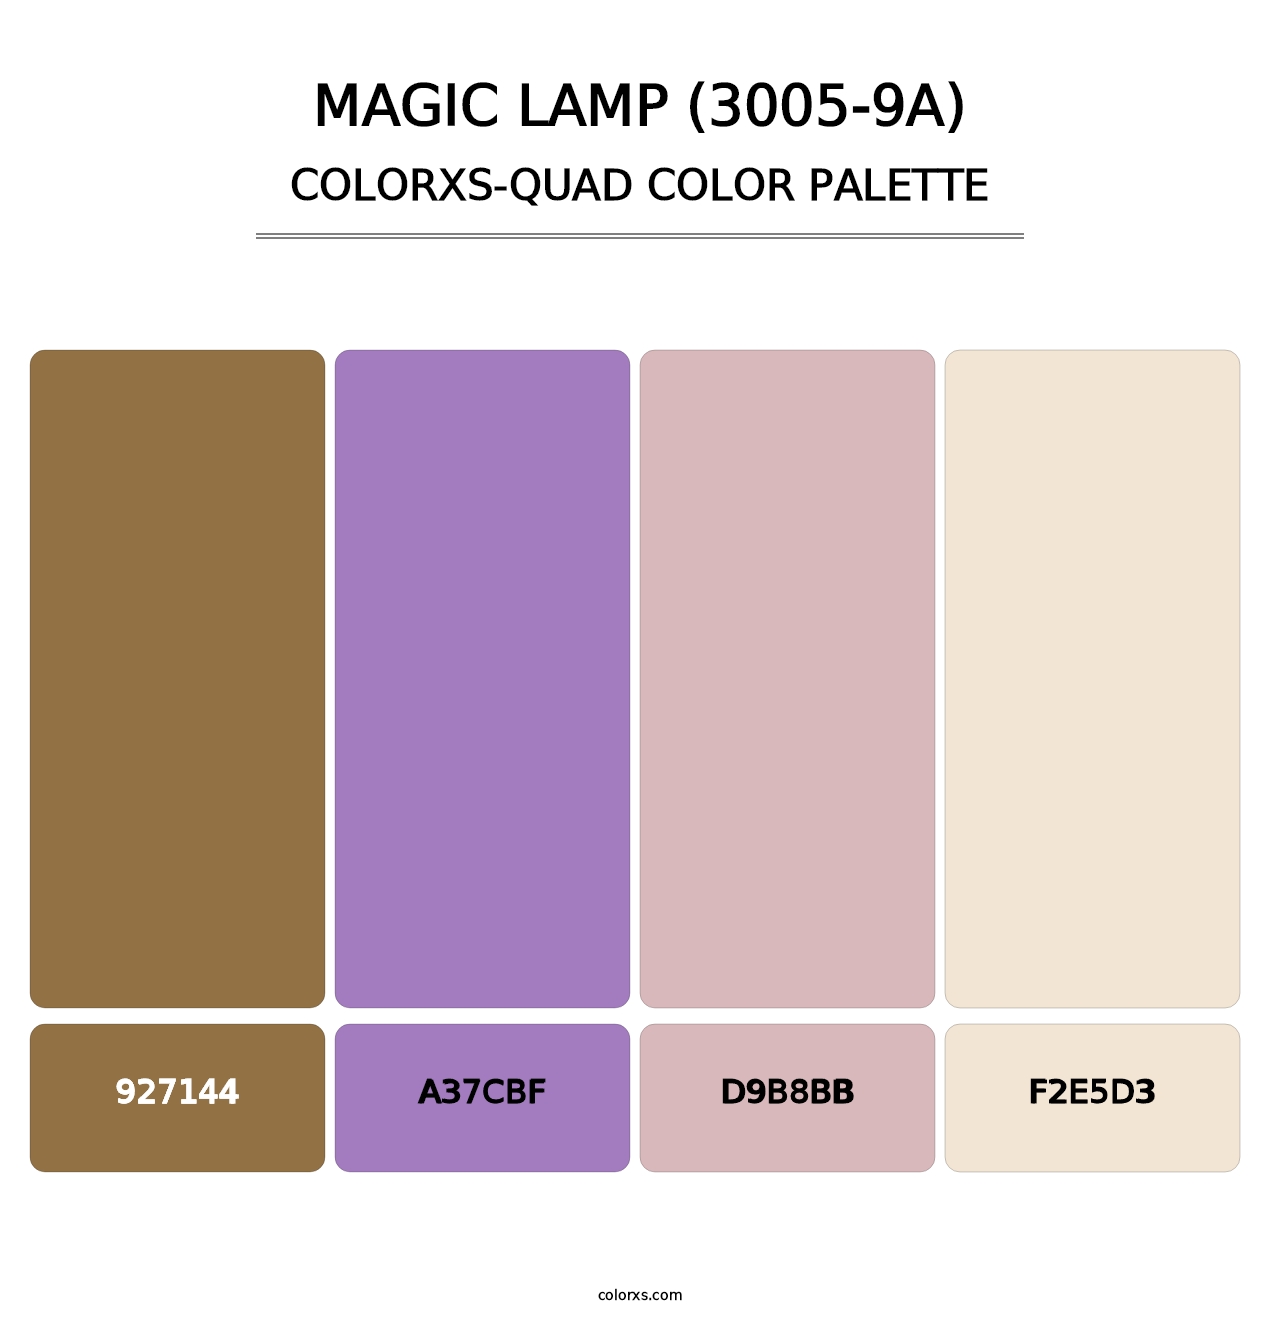 Magic Lamp (3005-9A) - Colorxs Quad Palette